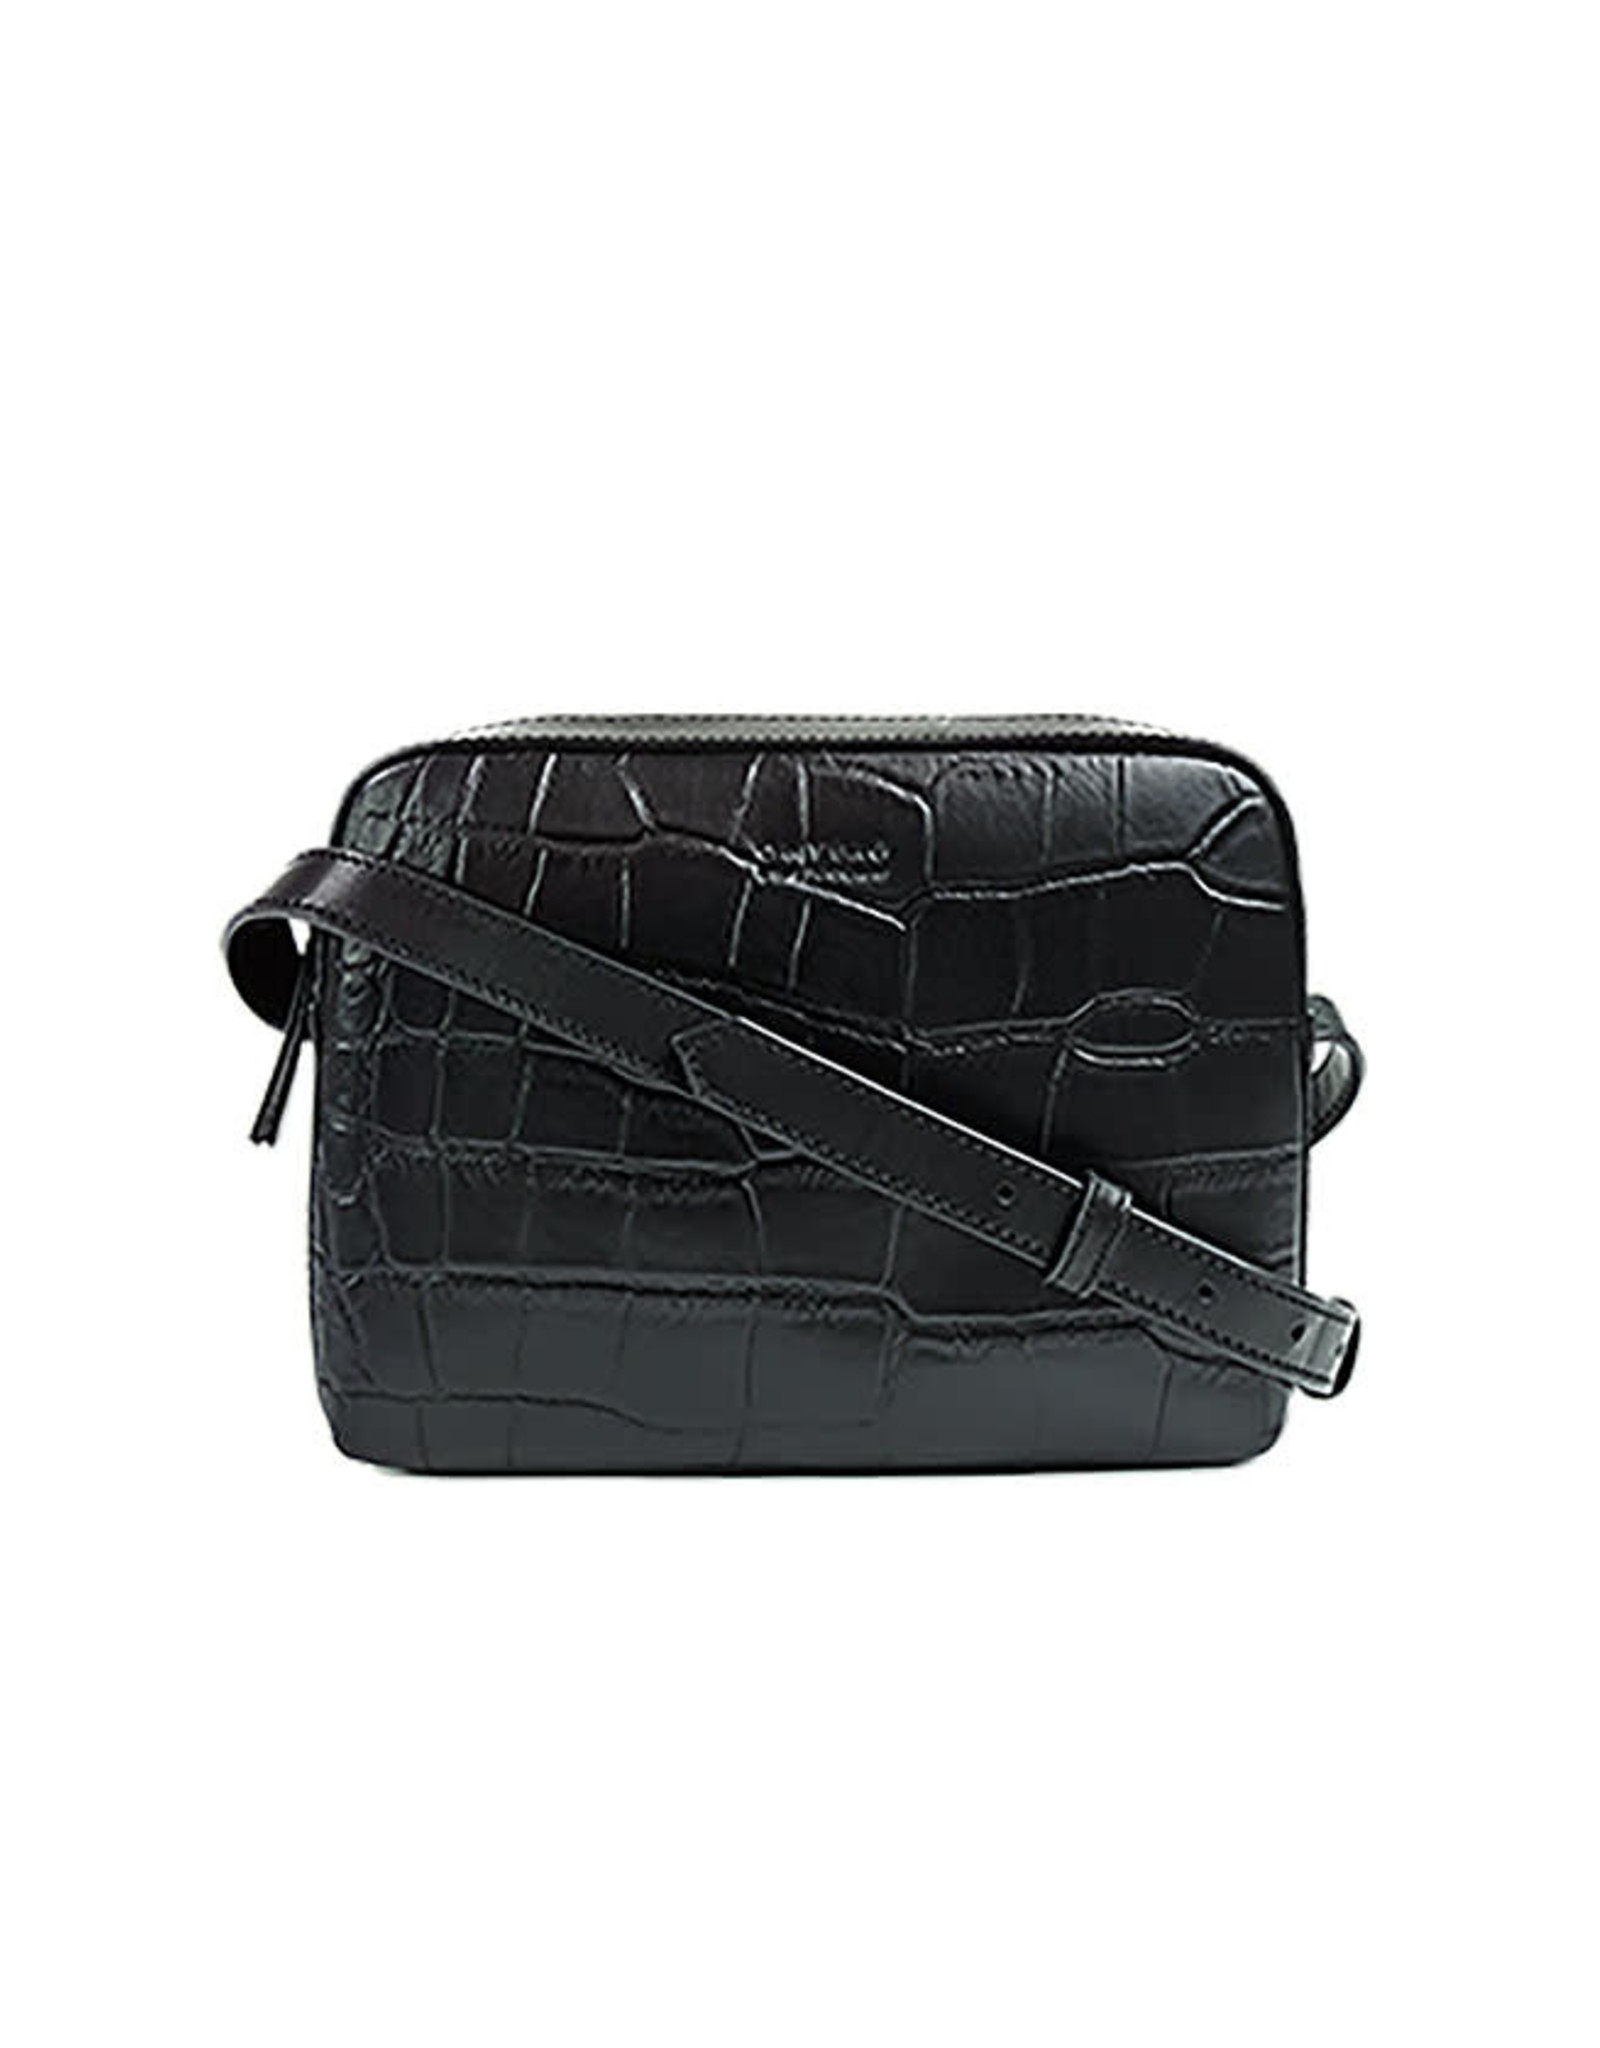 O My Bag Handtas Sue Croco-black (classic leather)